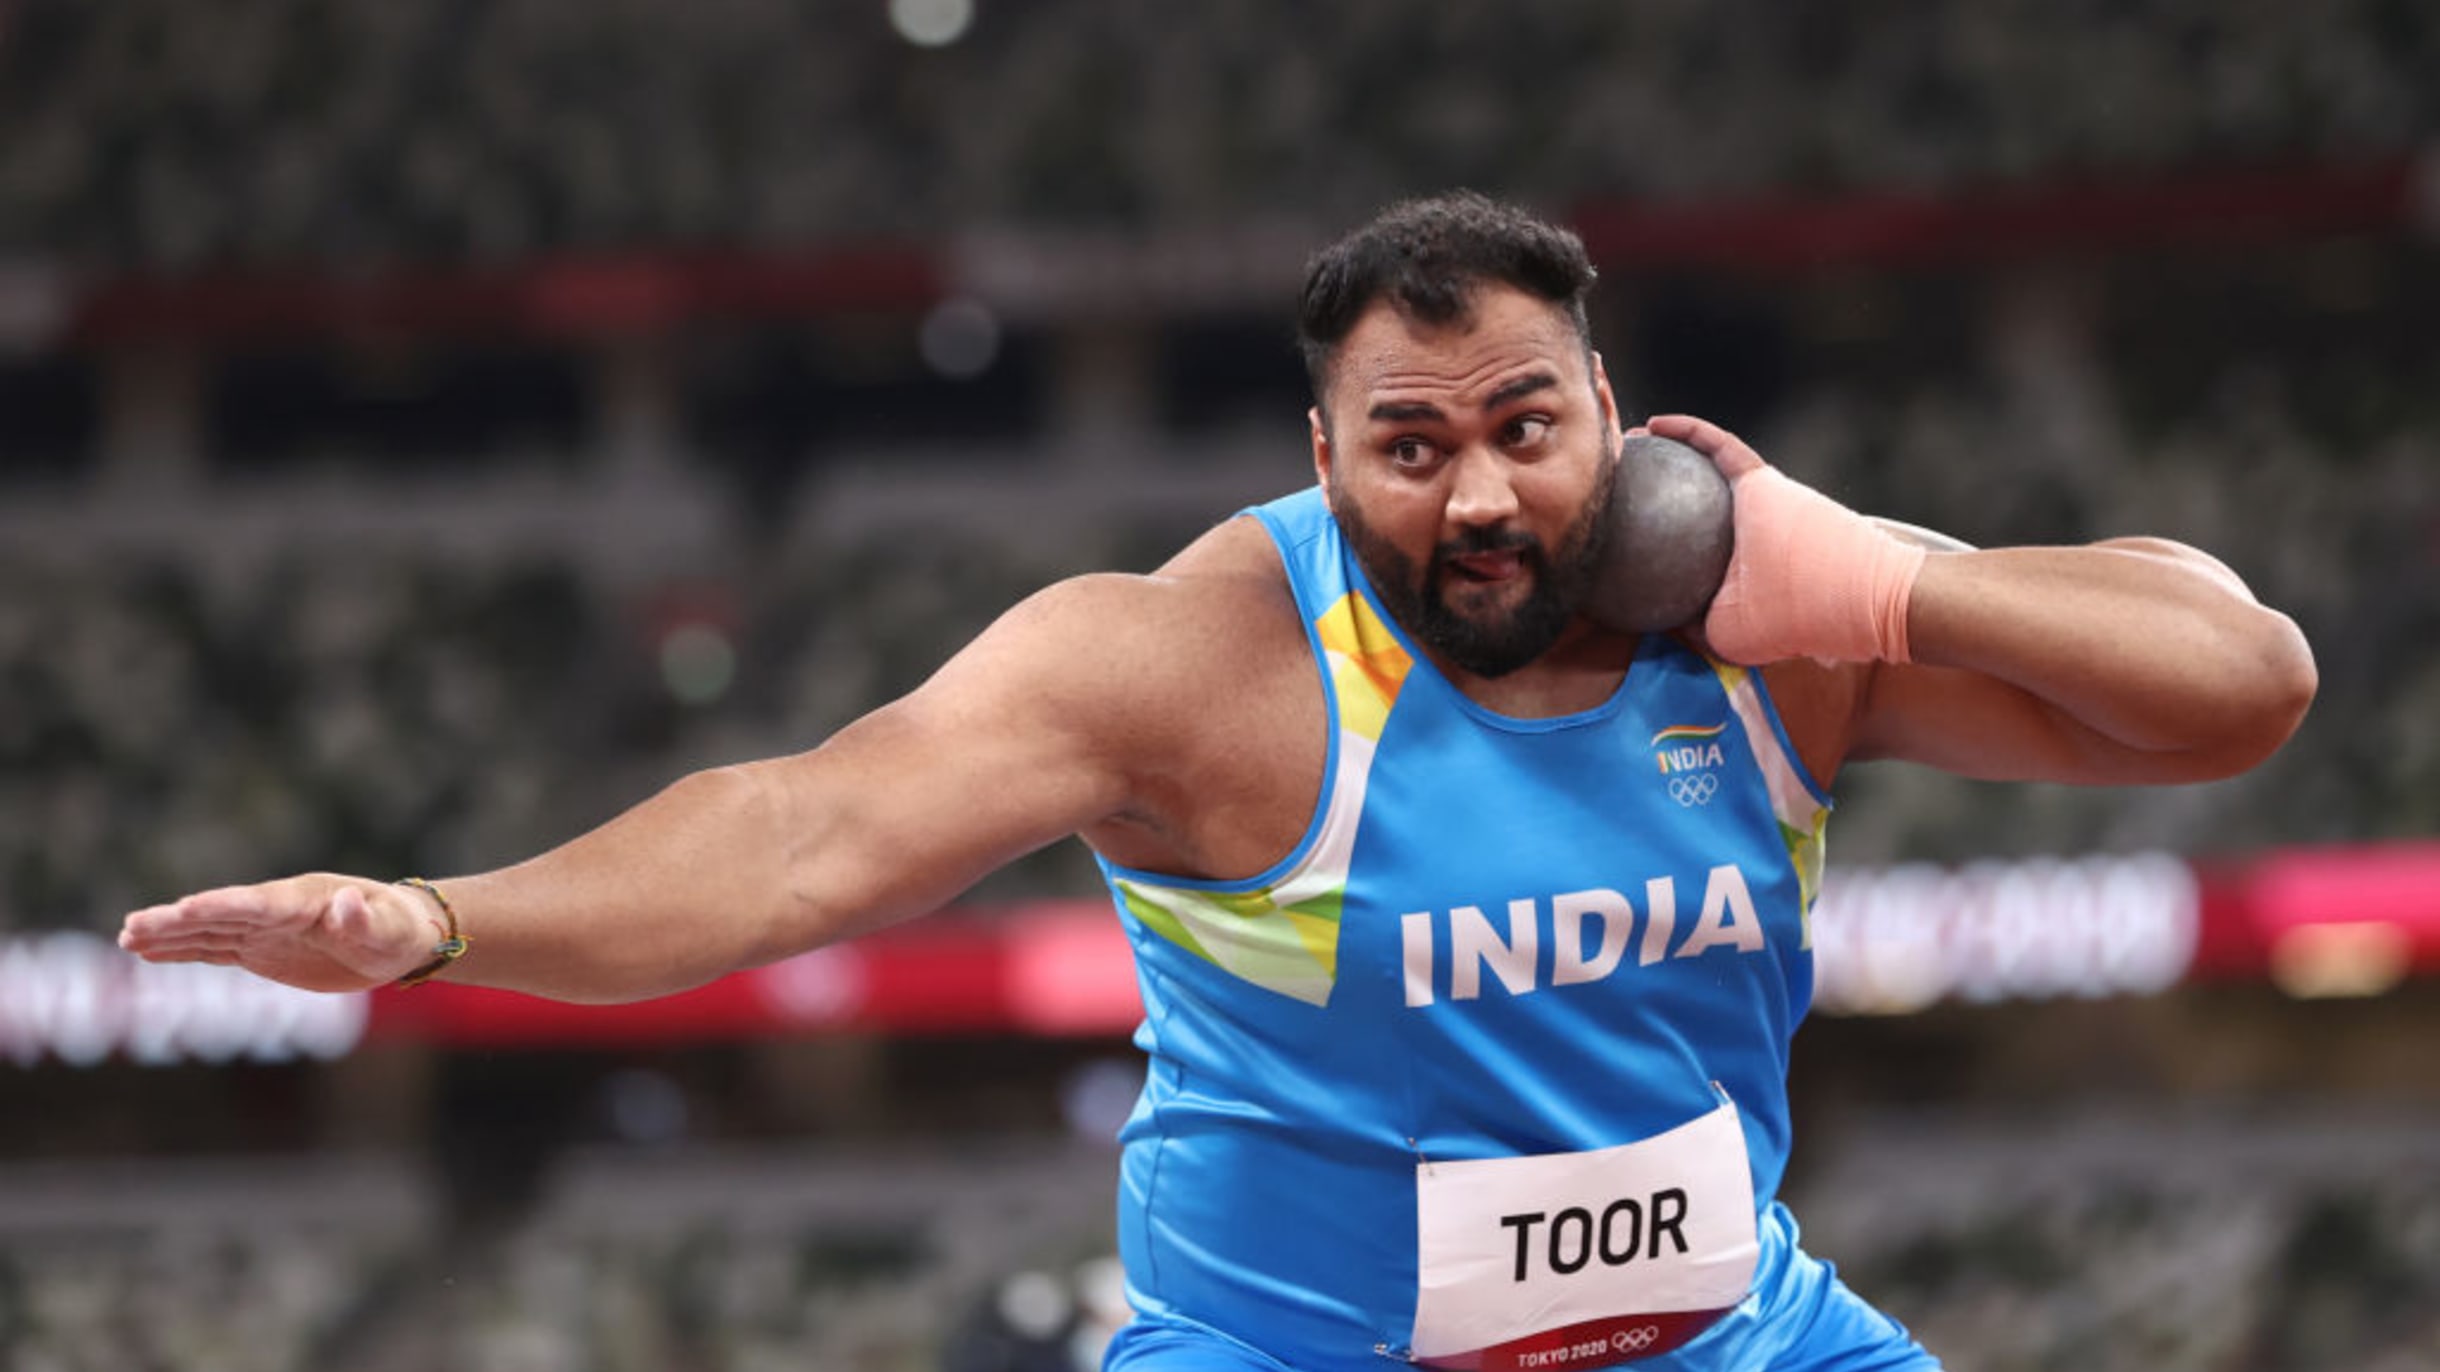 Parul, Ancy win silver, Tejaswin leads in decathlon - Hindustan Times